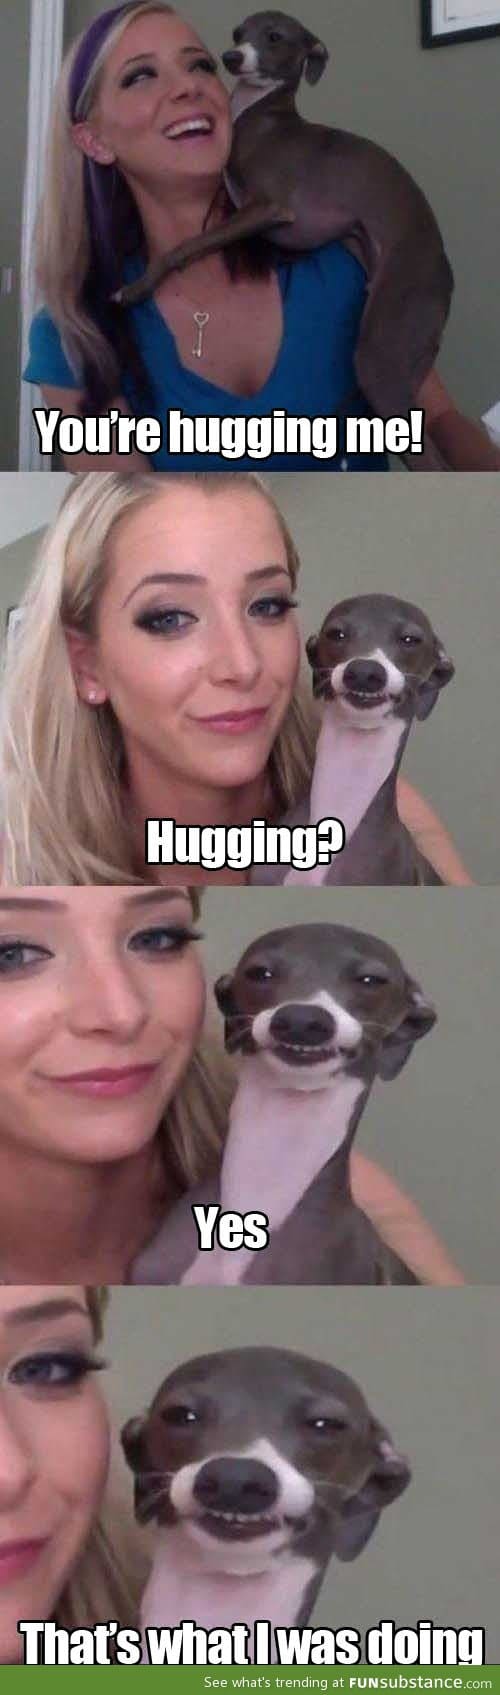 Hugging, right